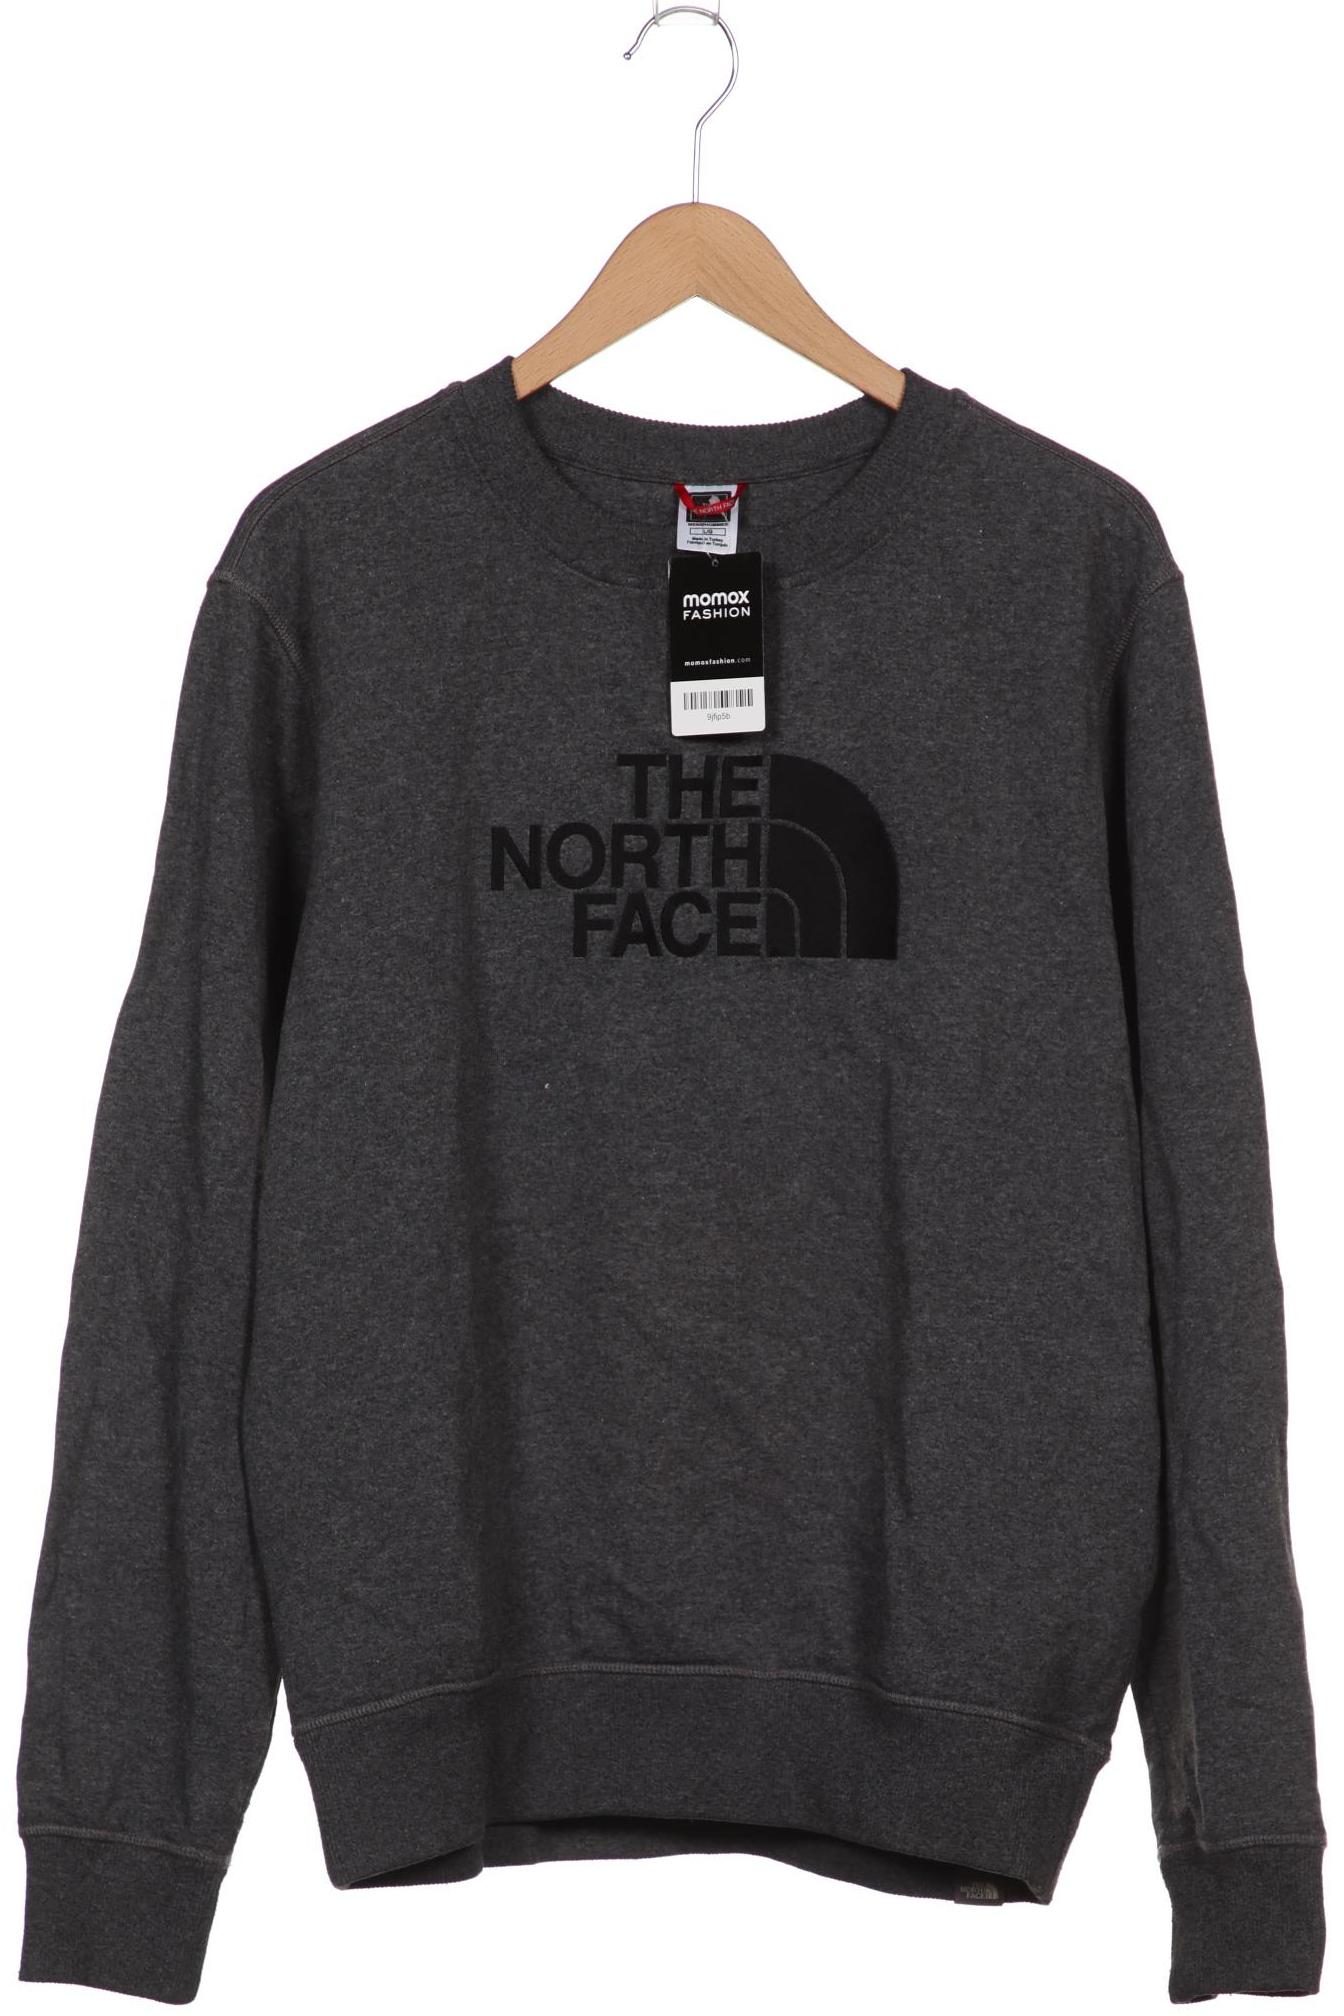 The North Face Herren Sweatshirt, grau, Gr. 52 von The North Face